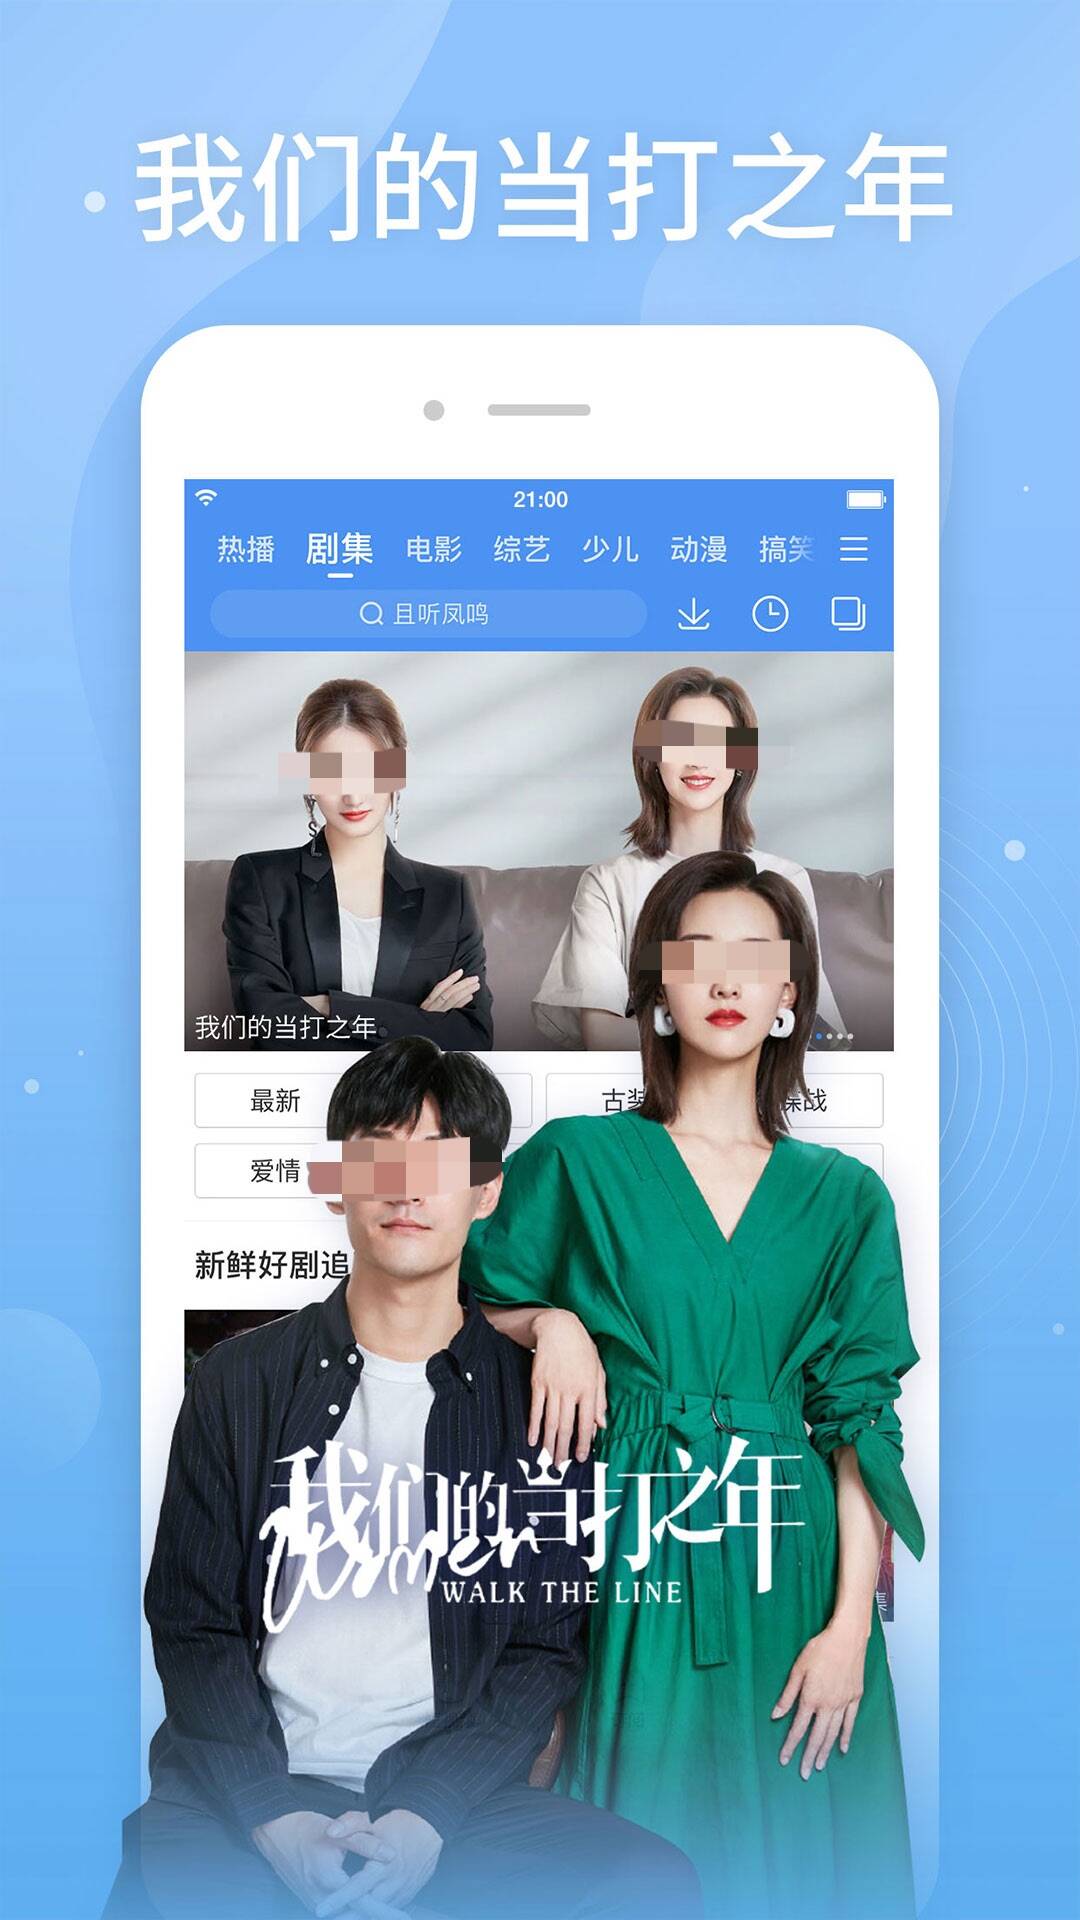 日剧tv下载app分享 日剧观影app哪些更好用